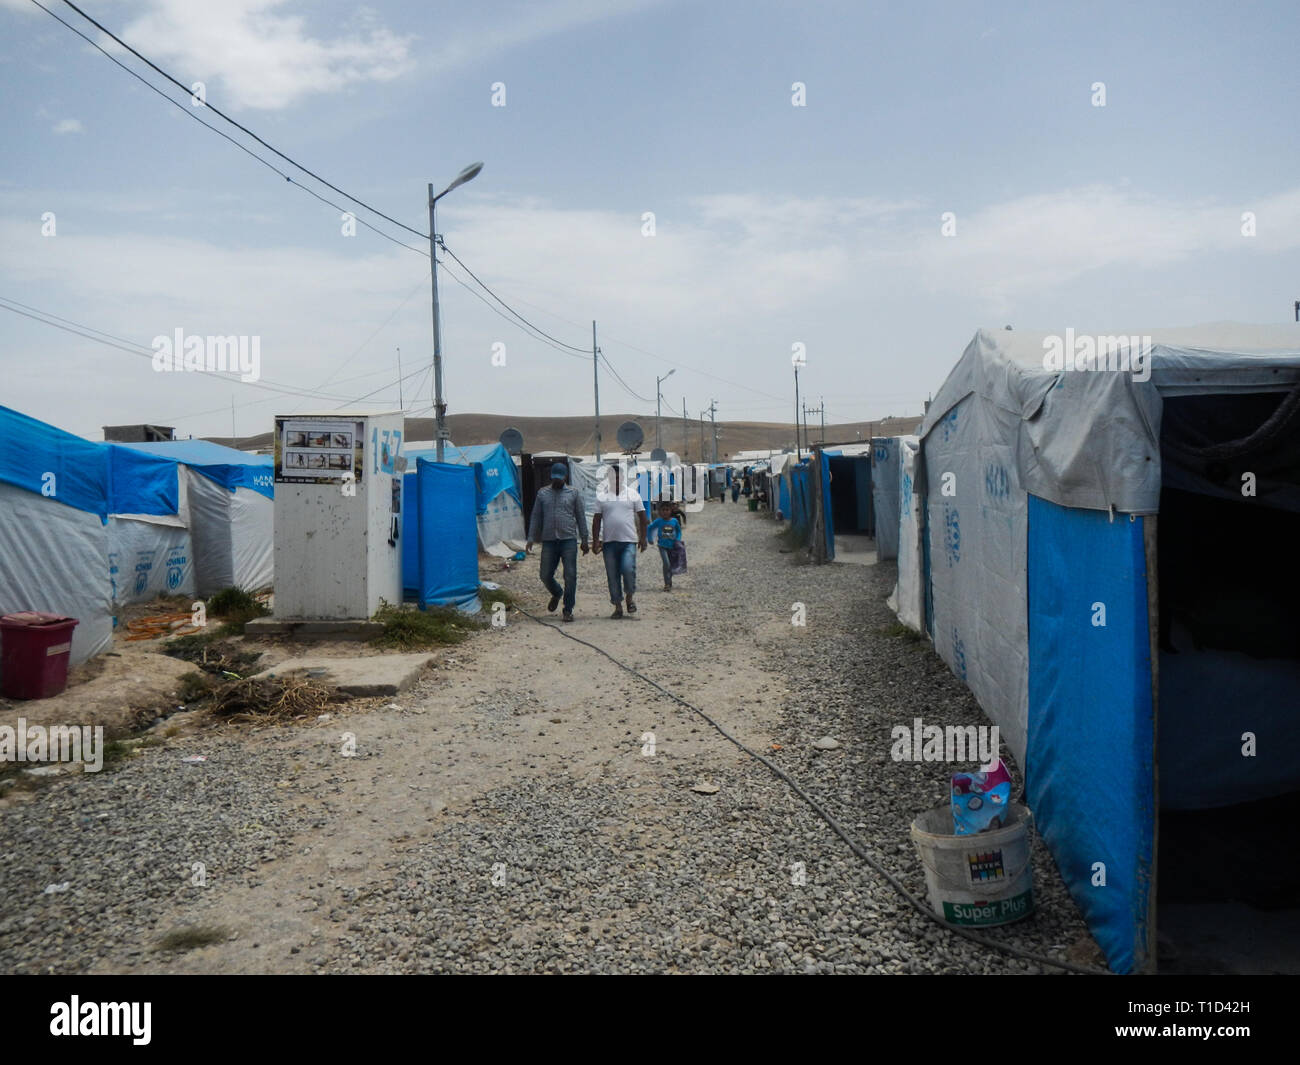 22.05.2017, Kawergosk, Irak.: Kawergosk Flüchtlingslager Irak von außen gesehen Stockfoto